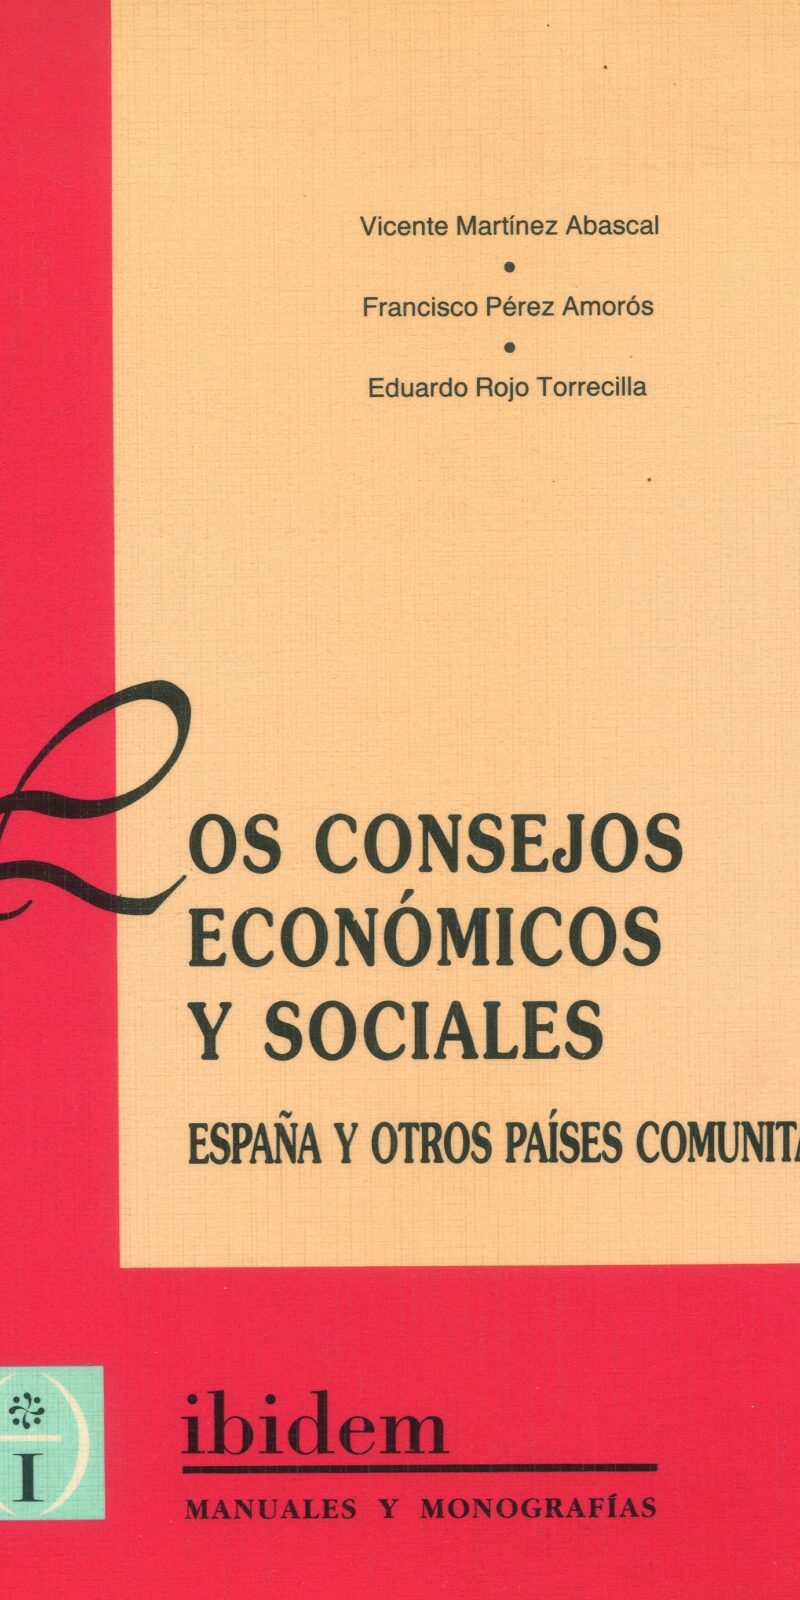 los consejos economicos y sociales